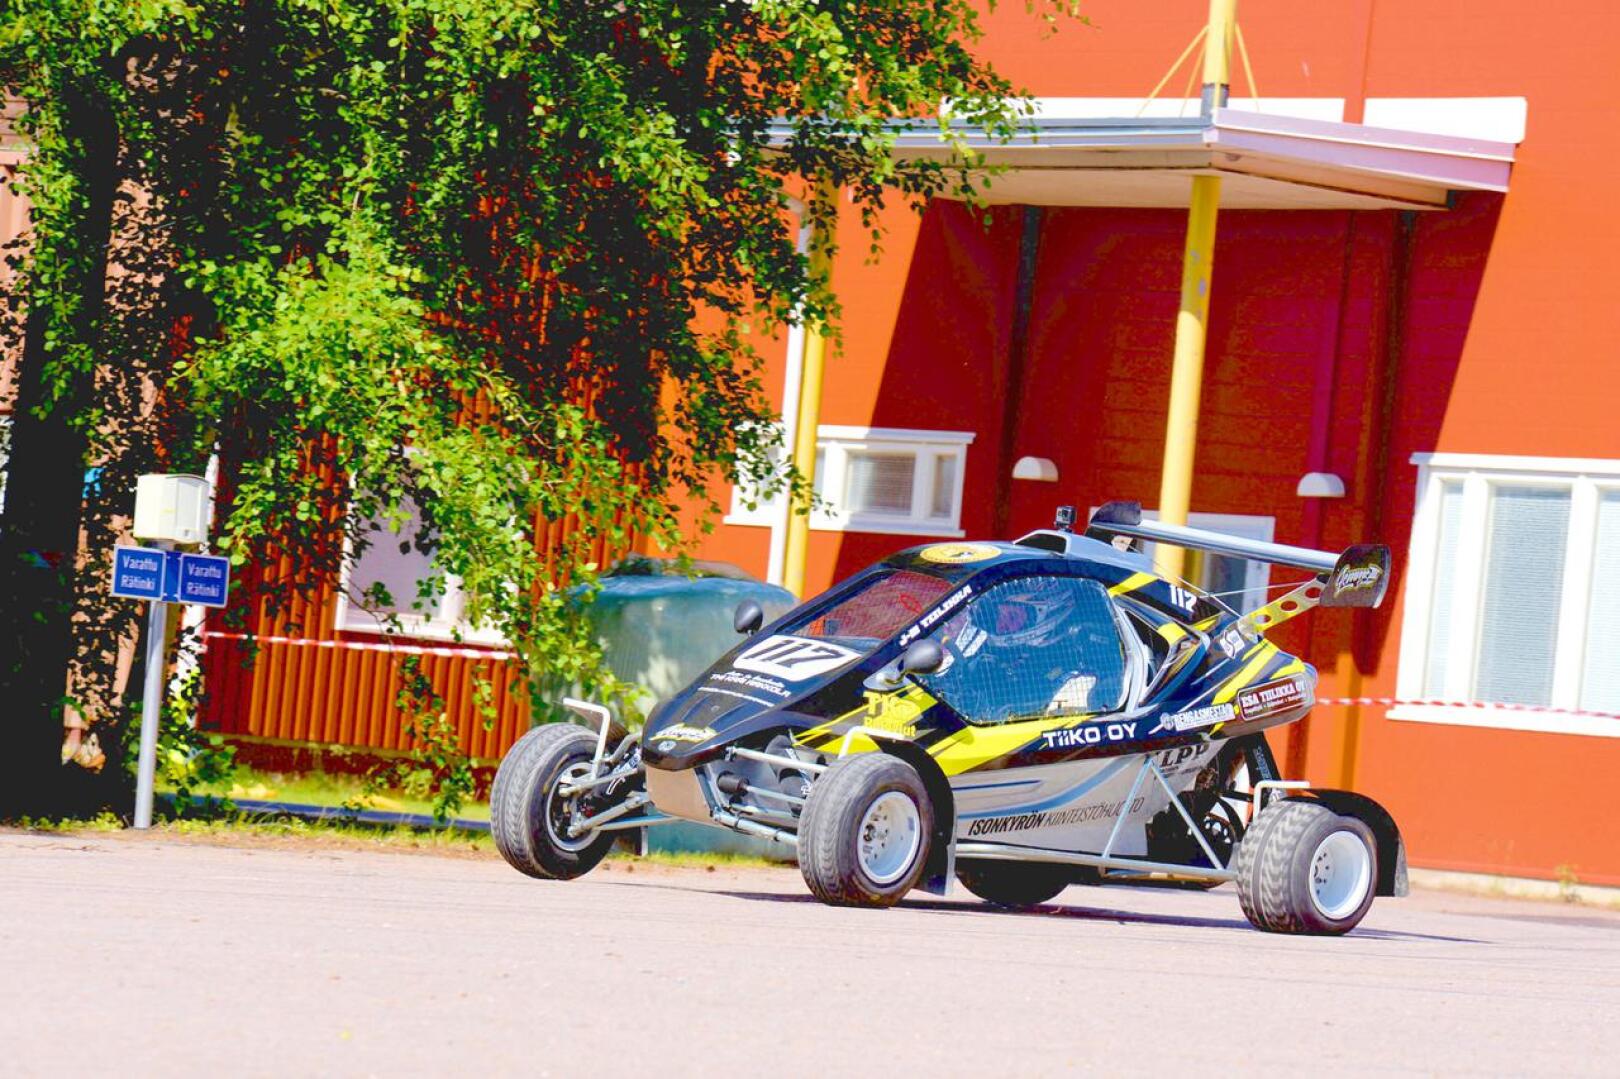 Teollisuuskylän rallisprintissä tulee olemaan monennäköistä menopeliä. Kaksi vuotta sitten Jari-Matti Tiilikka ajoi kyseisellä crosskartilla.